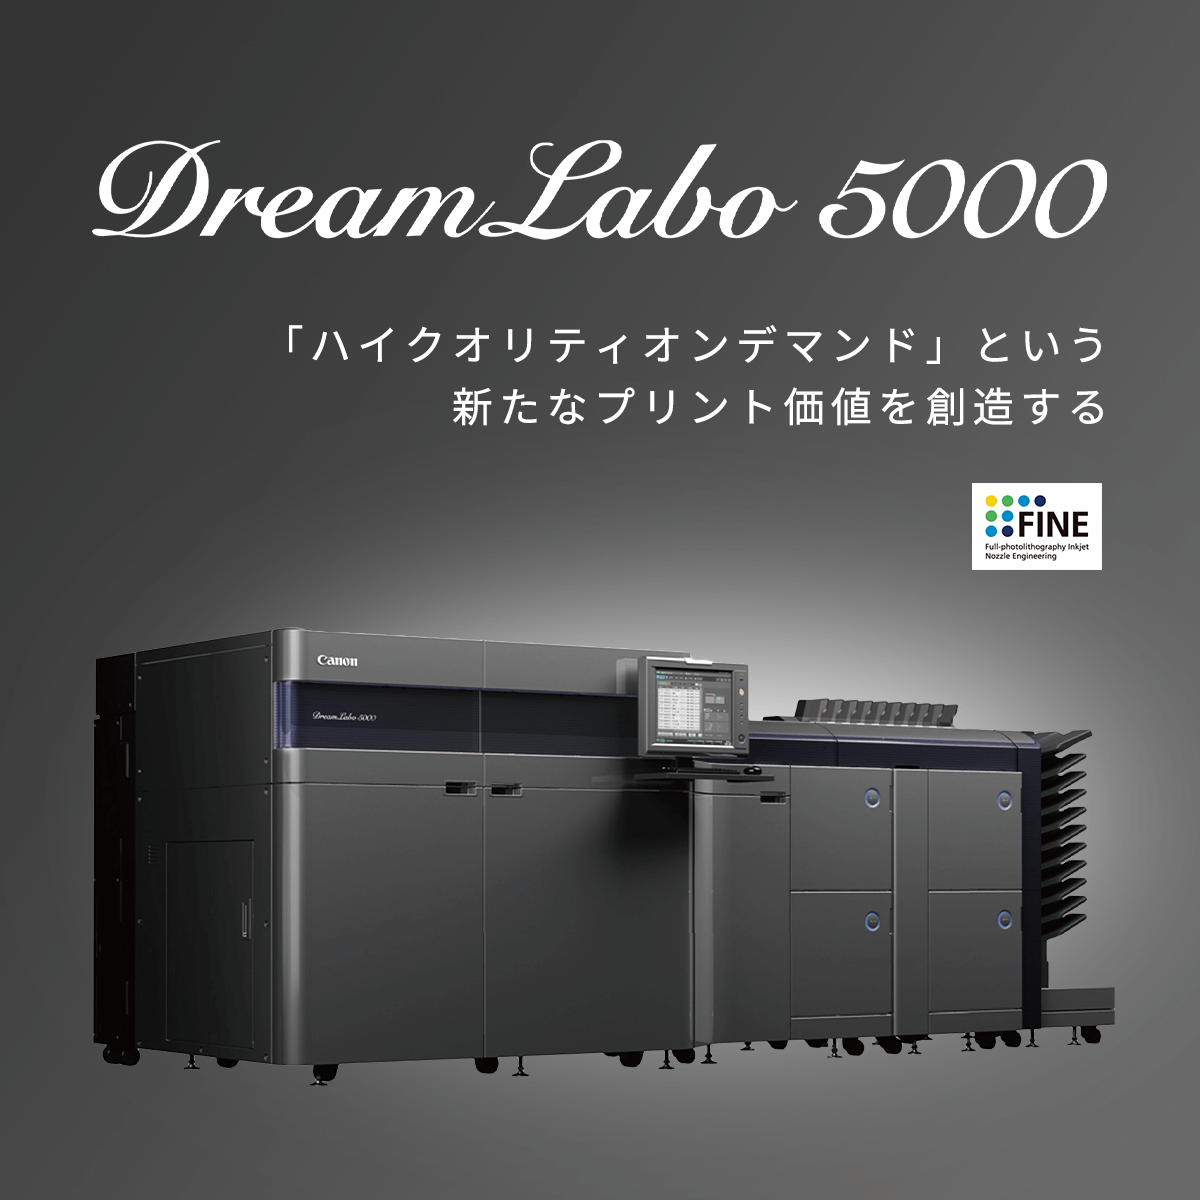 DreamLabo5000